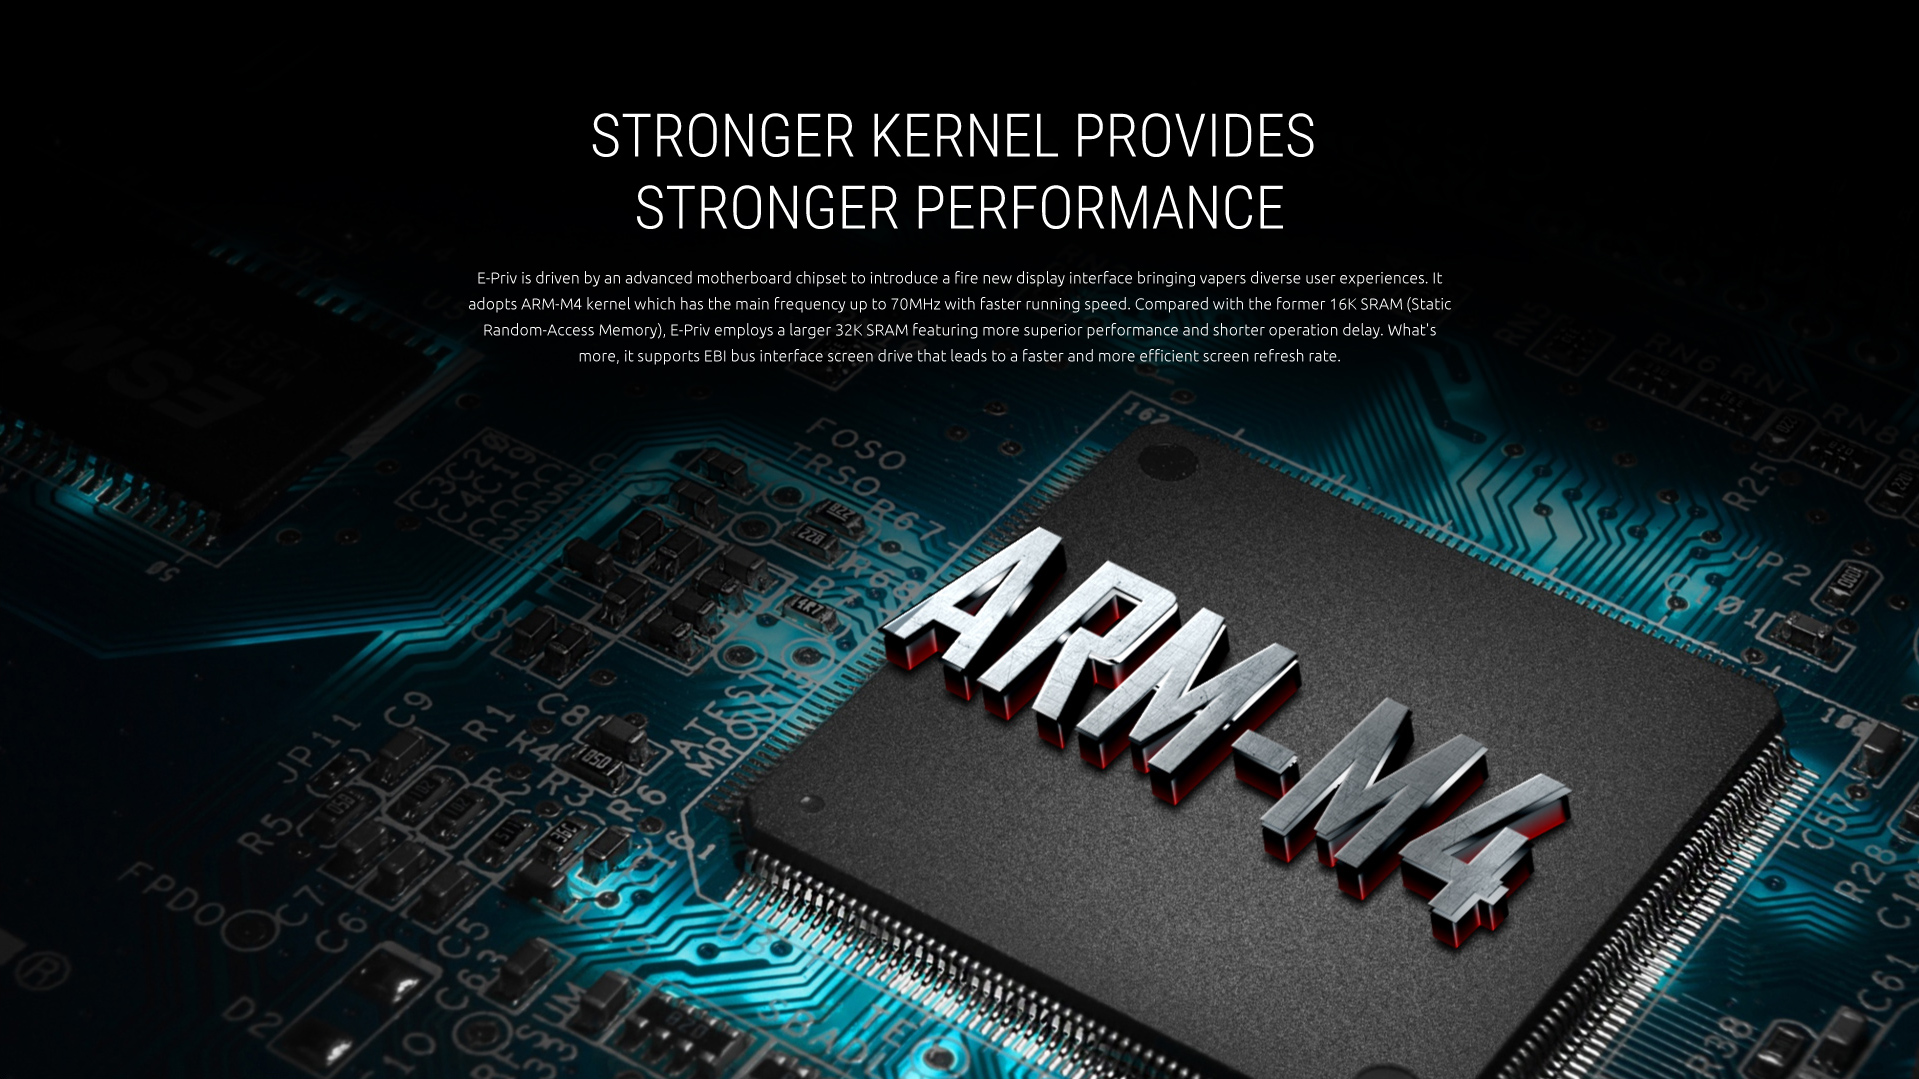 Stronger Kernel Provides Stronger Performance - SMOK E-Priv Kit&Mod 